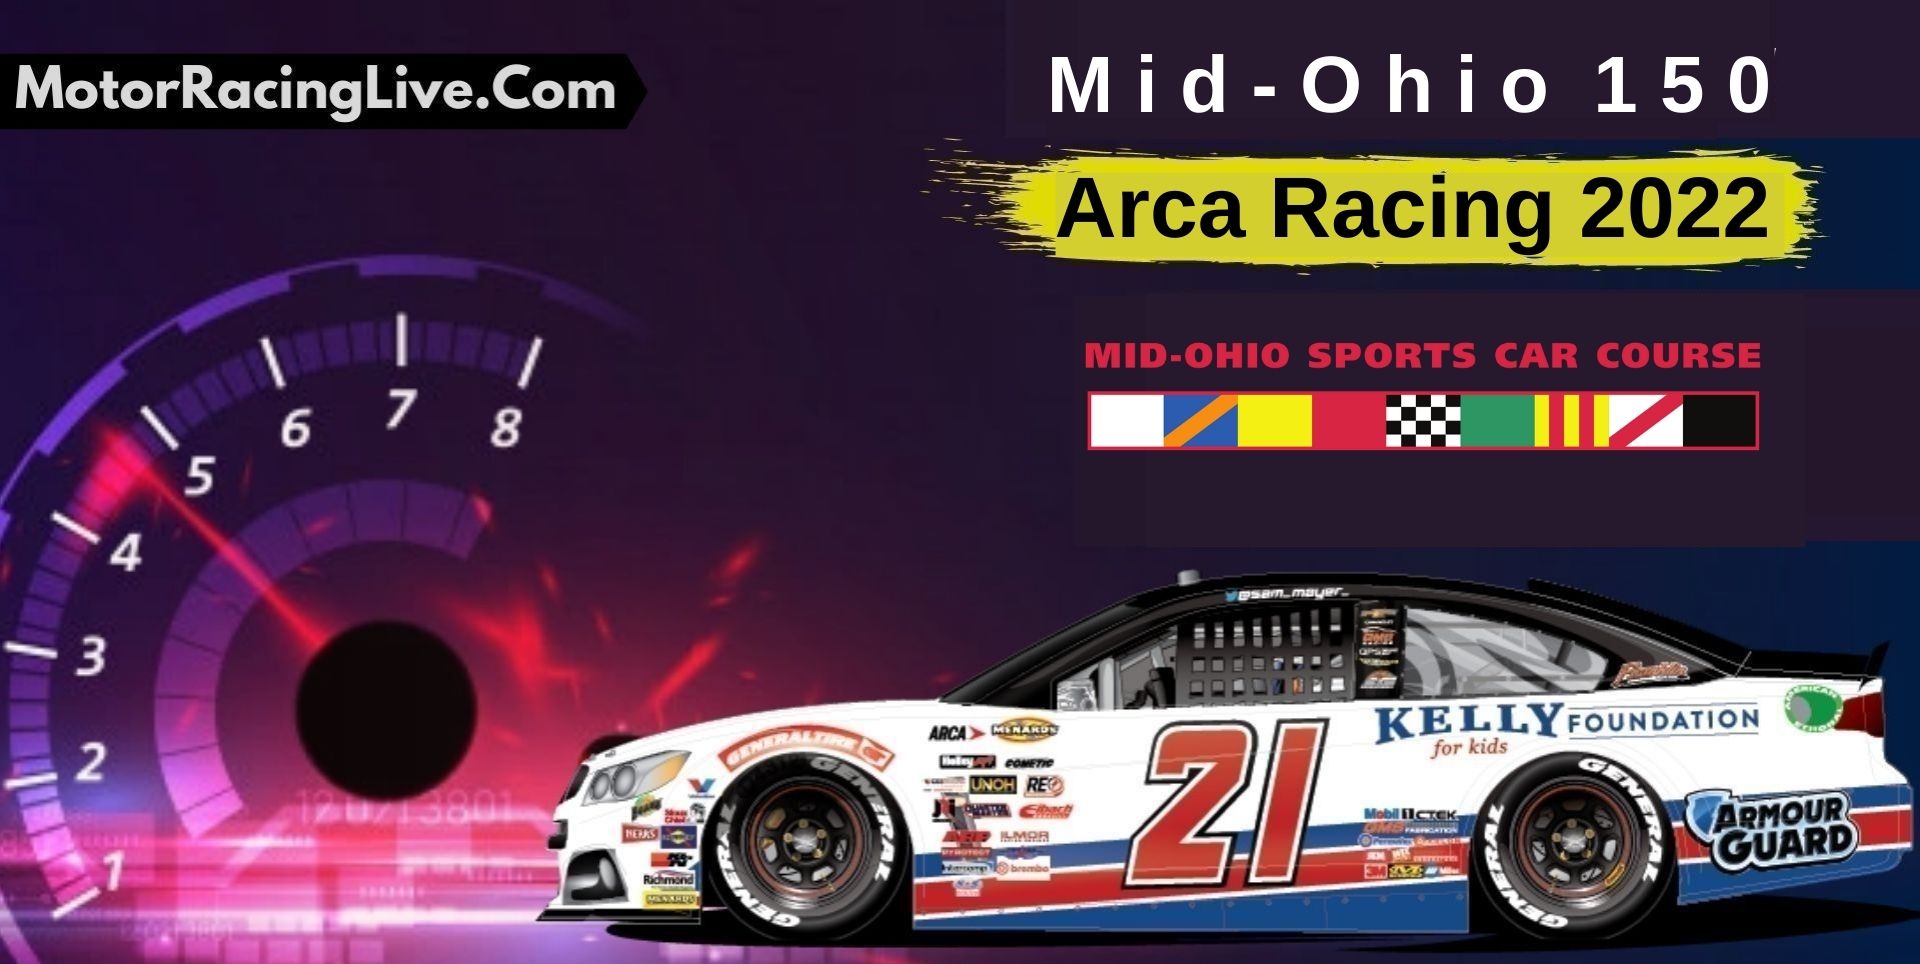 Mid-Ohio 150 ARCA Racing Live Stream 2022